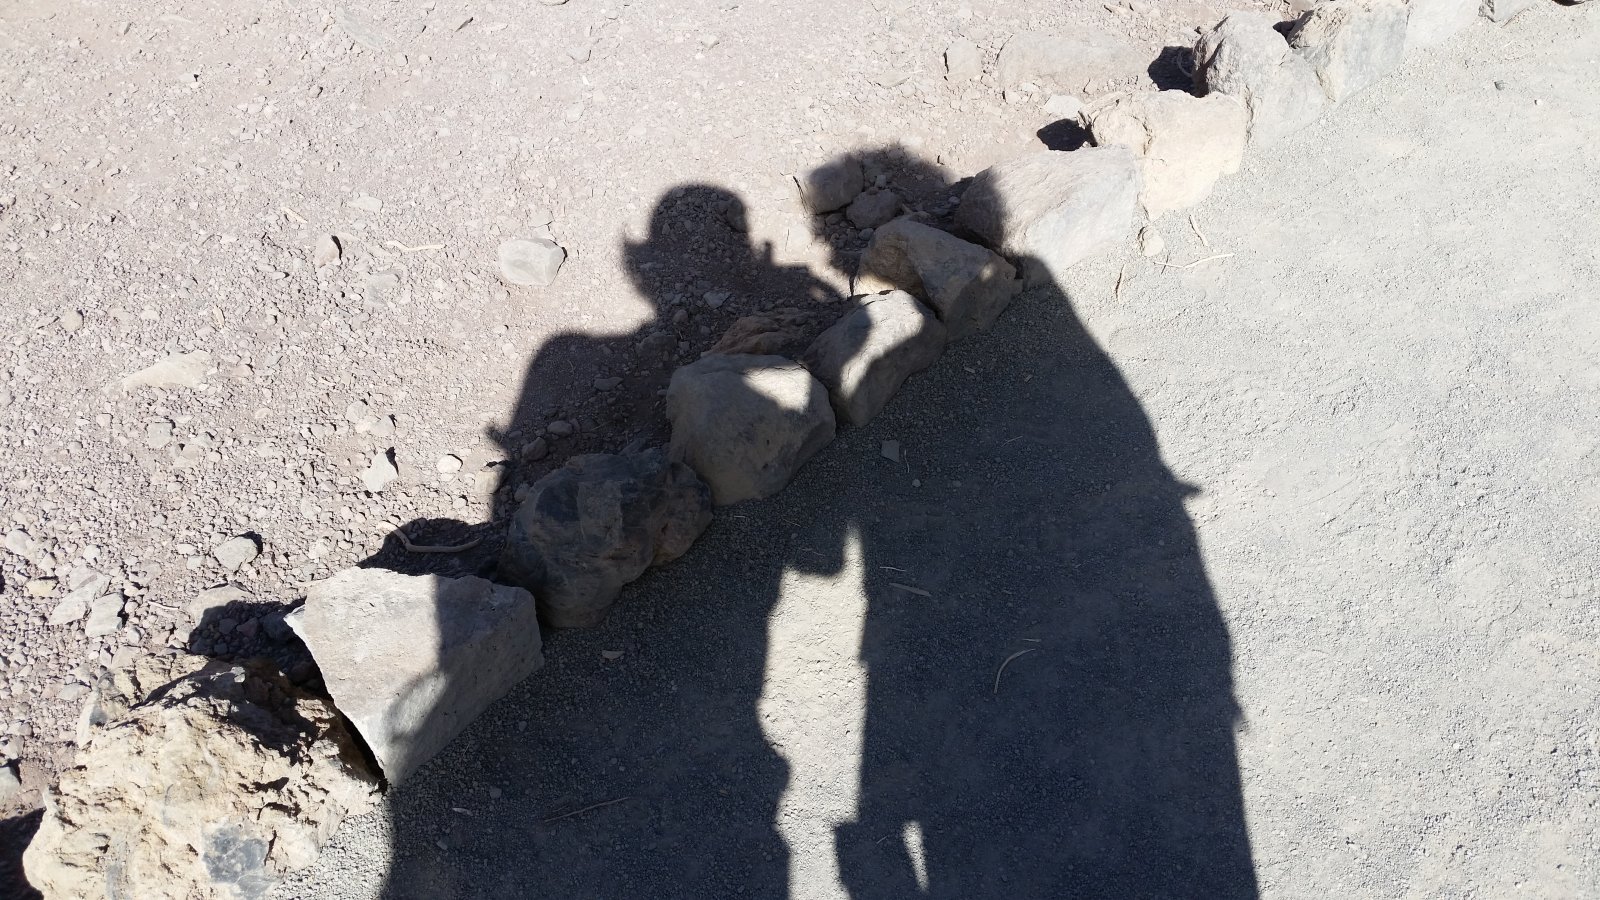 Wandeling op de lavavlakten van El Teide. Selfie, soort van